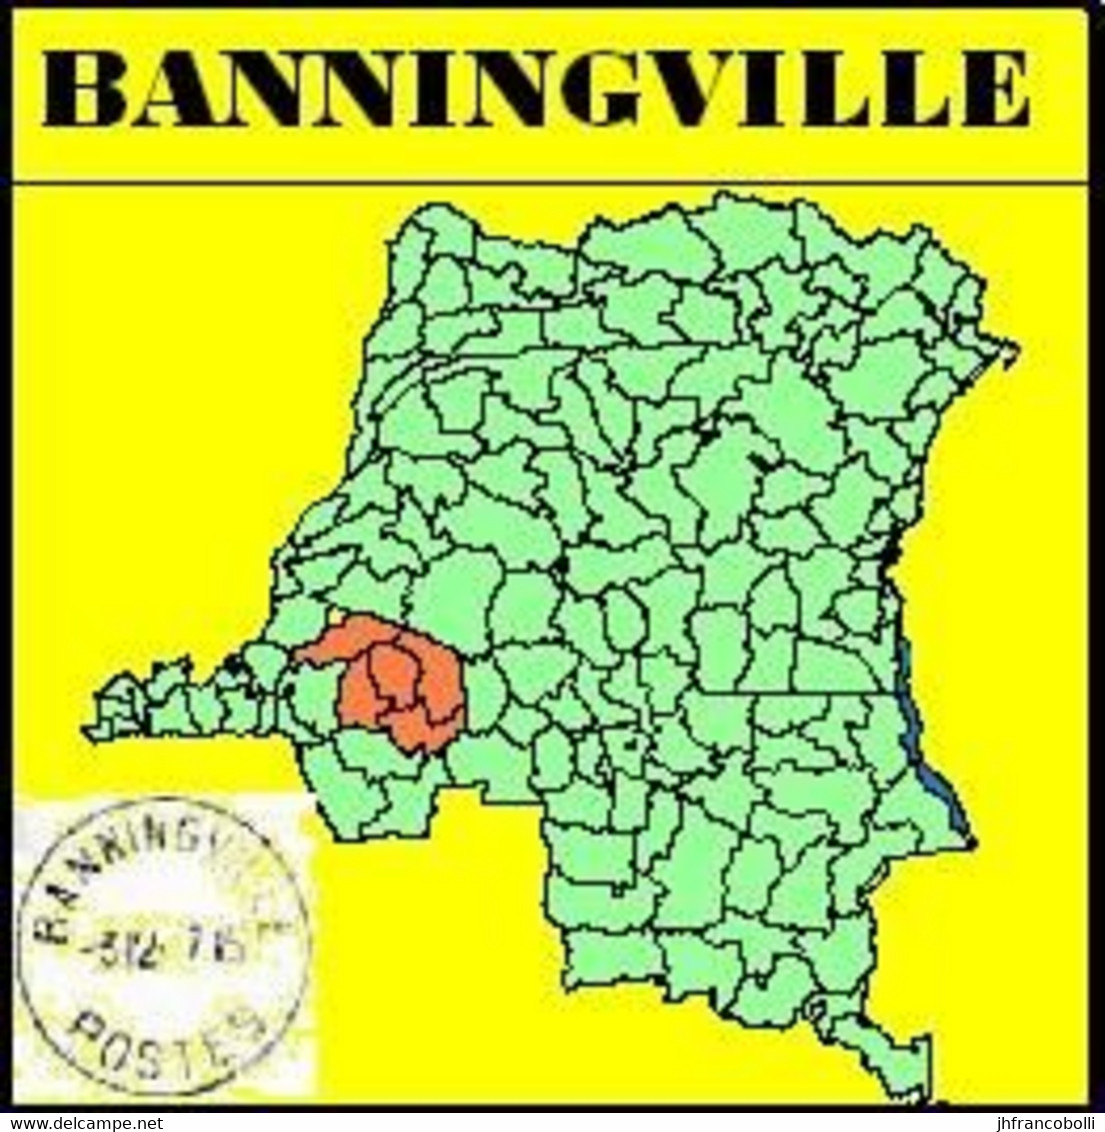 BANNINGVILLE BELGIAN CONGO / CONGO BELGE CANCEL STUDY [5] WITH COB 297+276+301+315+318+274 [ 6 Stamps] - Abarten Und Kuriositäten